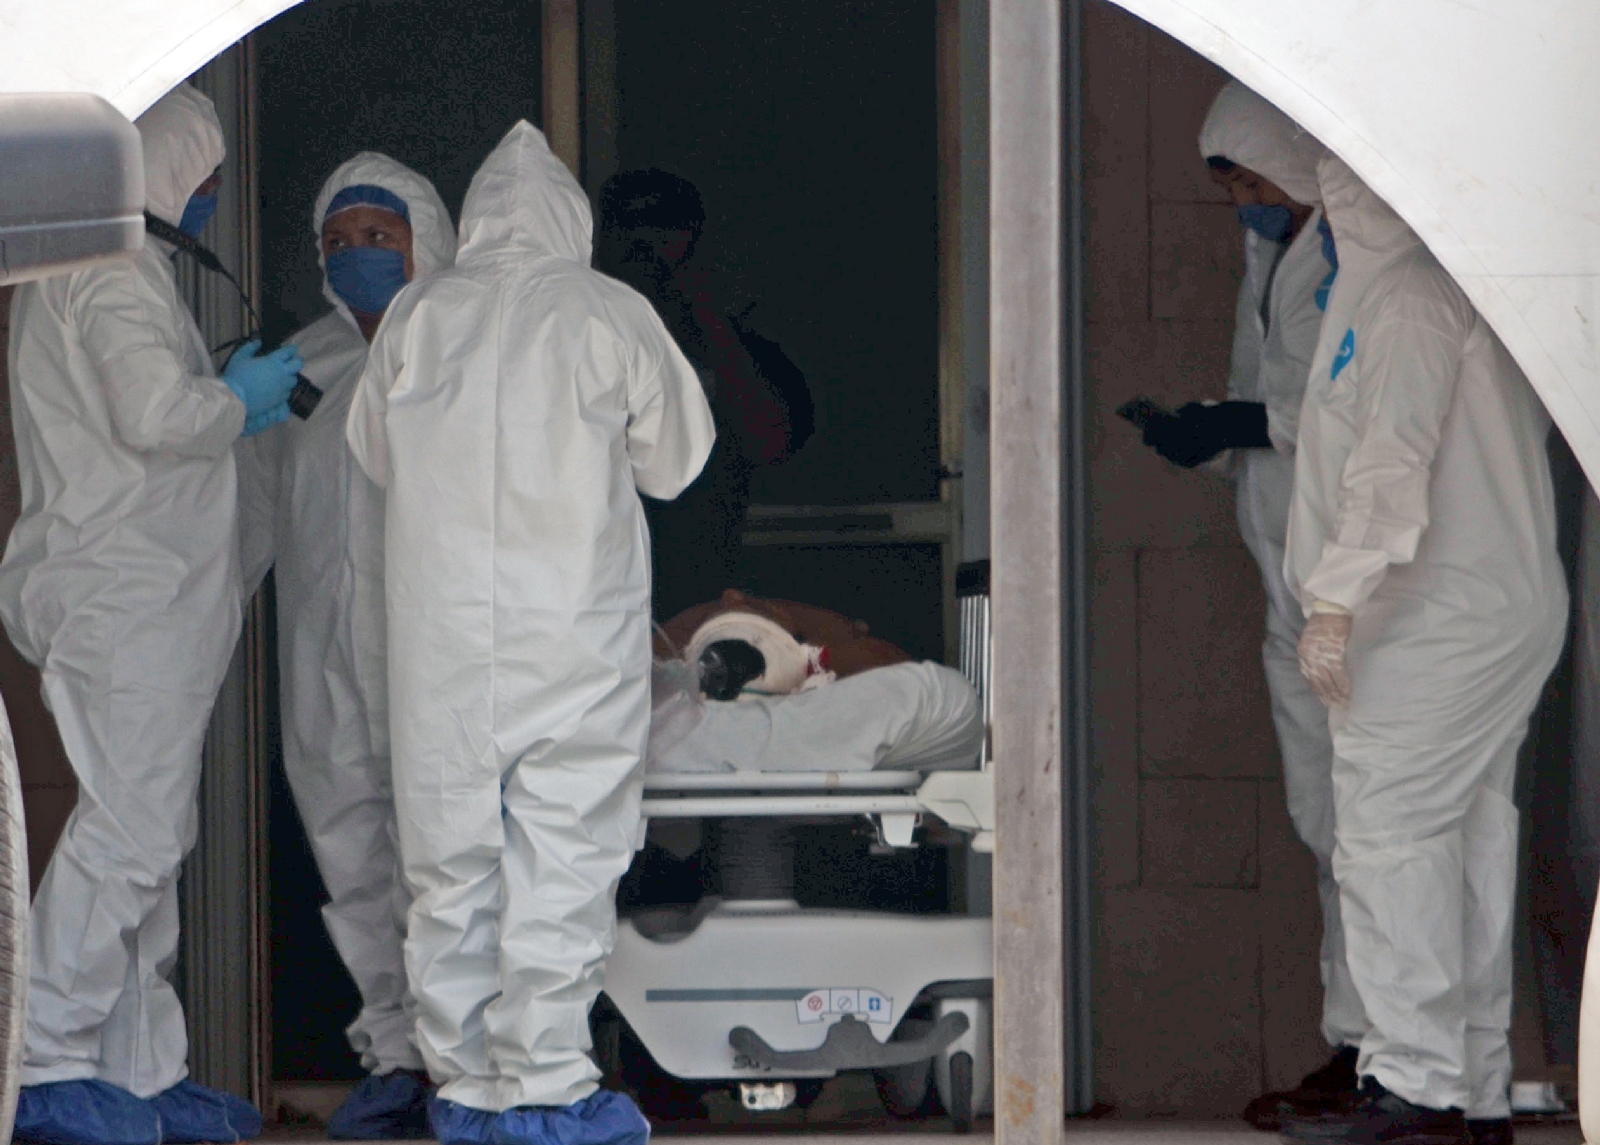 El día de hoy se registraron 472 contagios, cifra récord desde el inicio de la pandemia en Quintana Roo